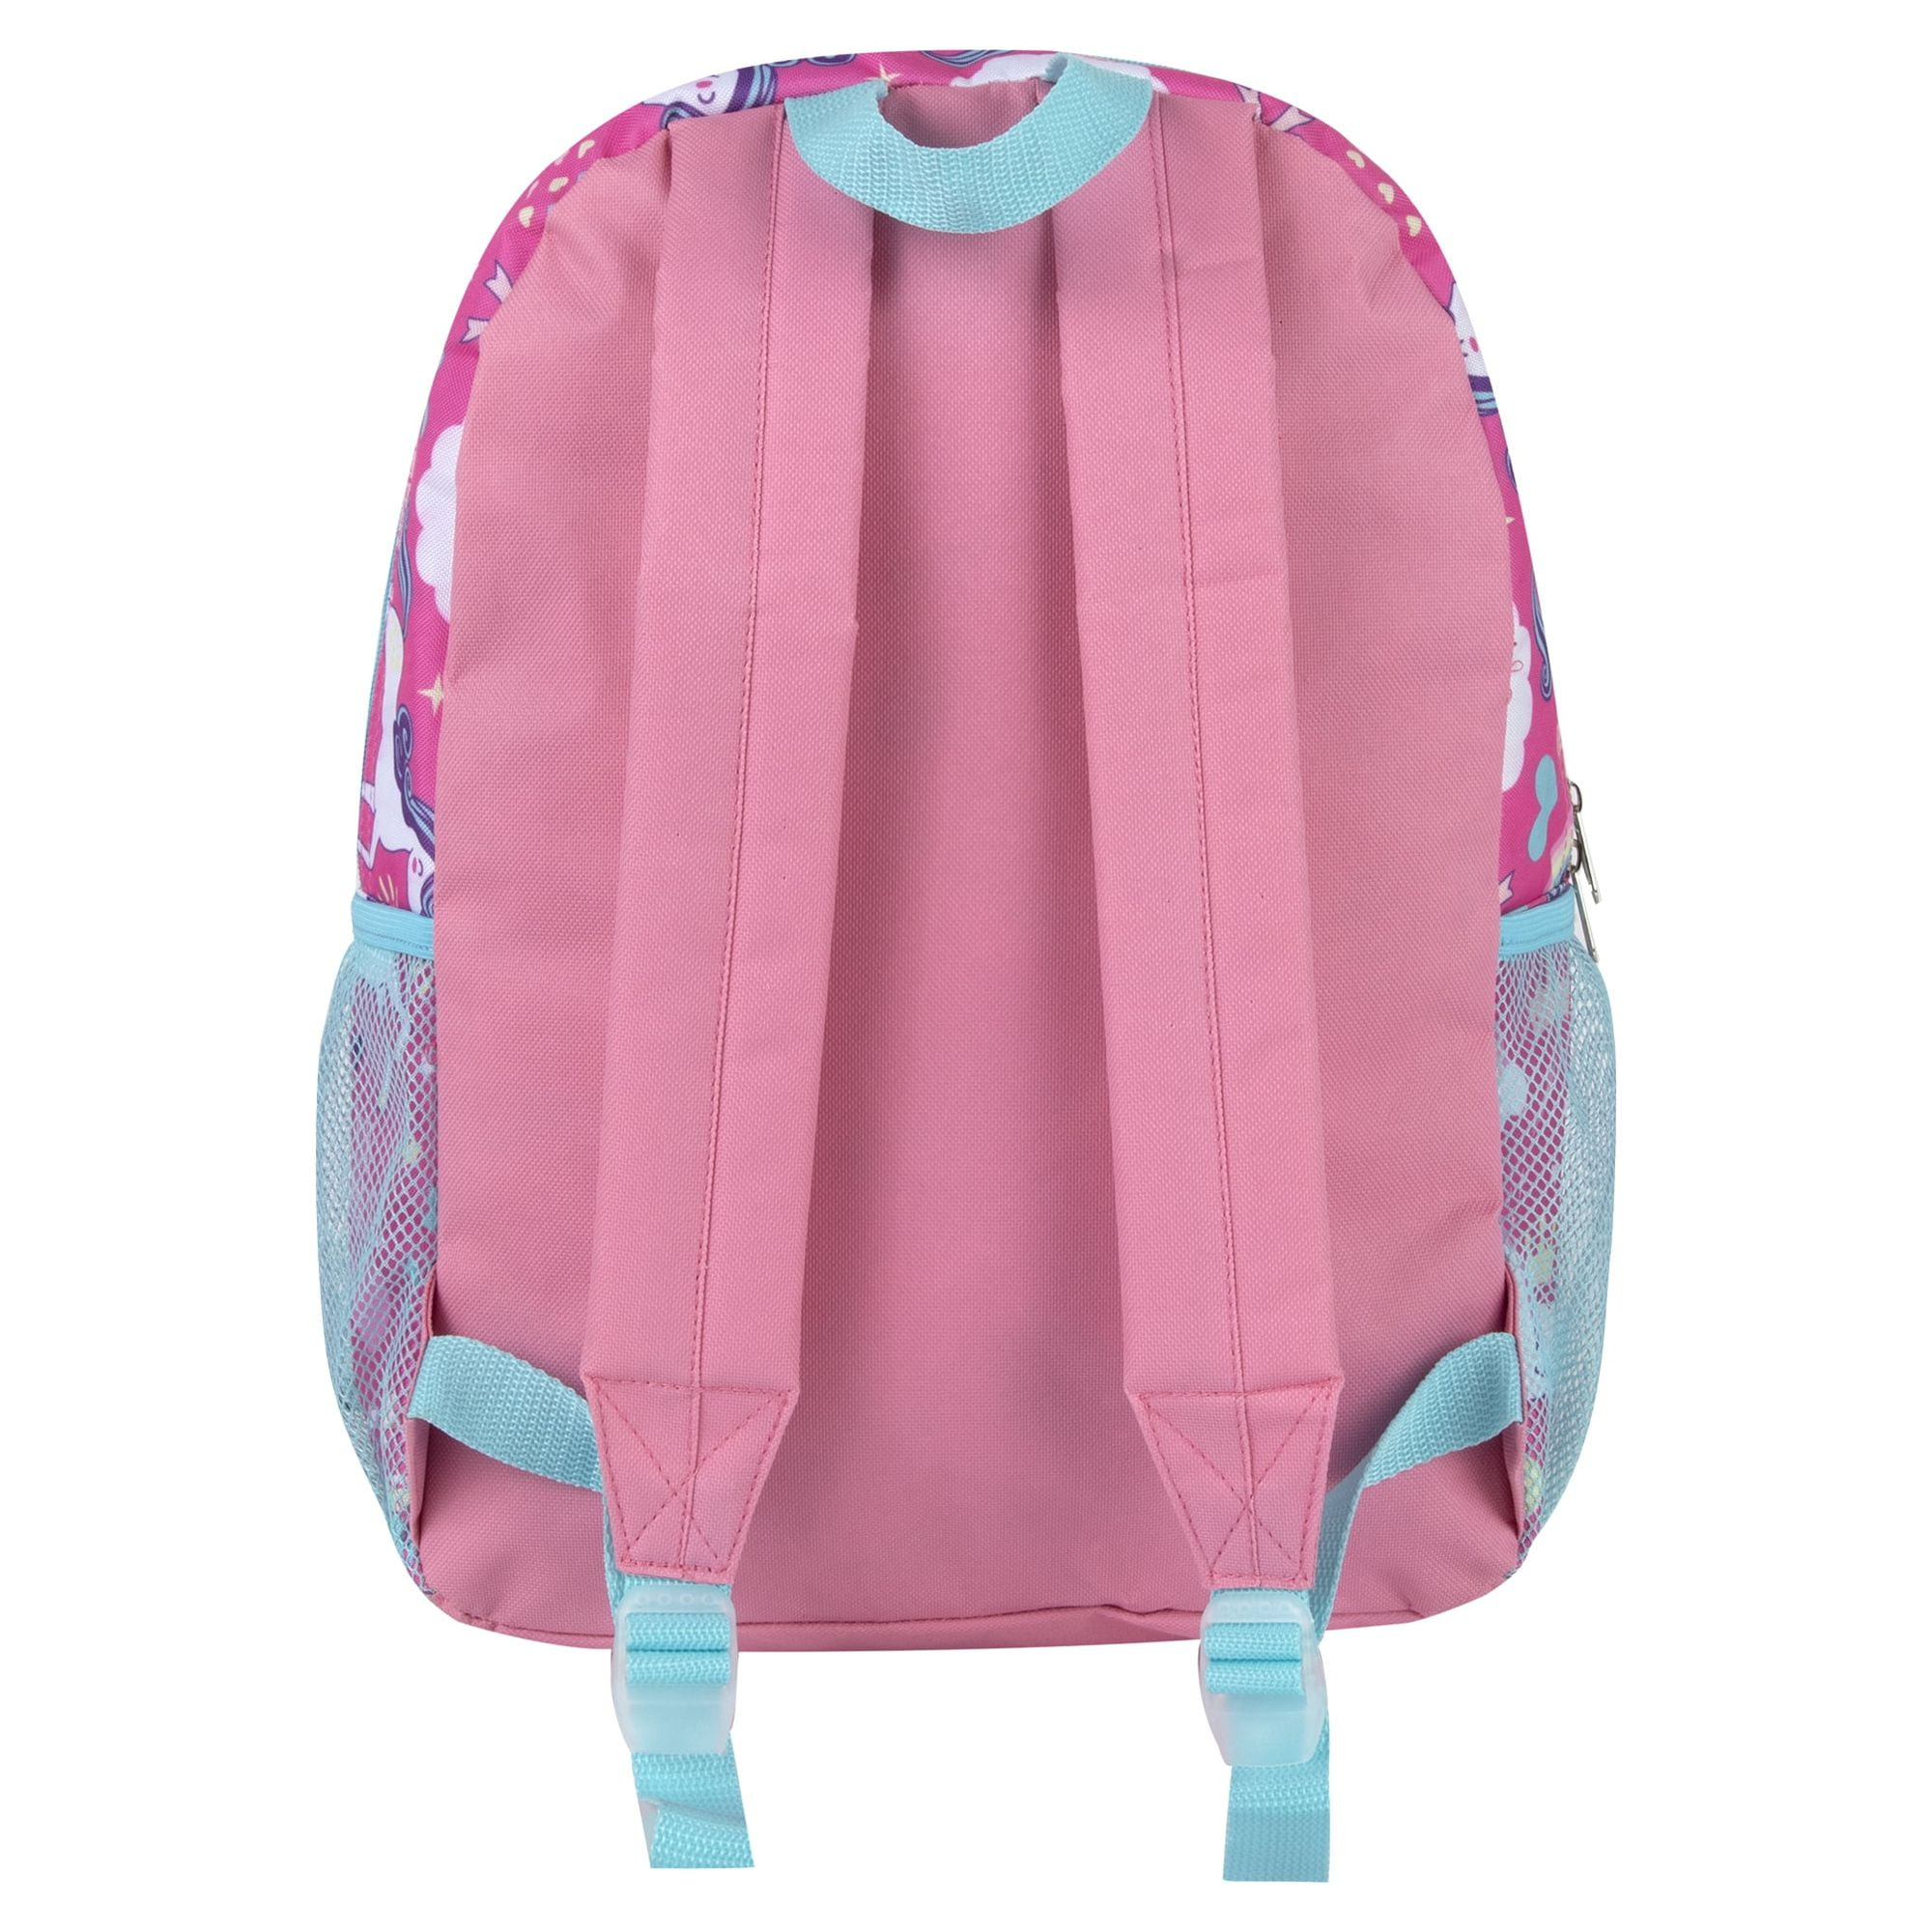 Trailmaker Glitter Love Backpack, Pink